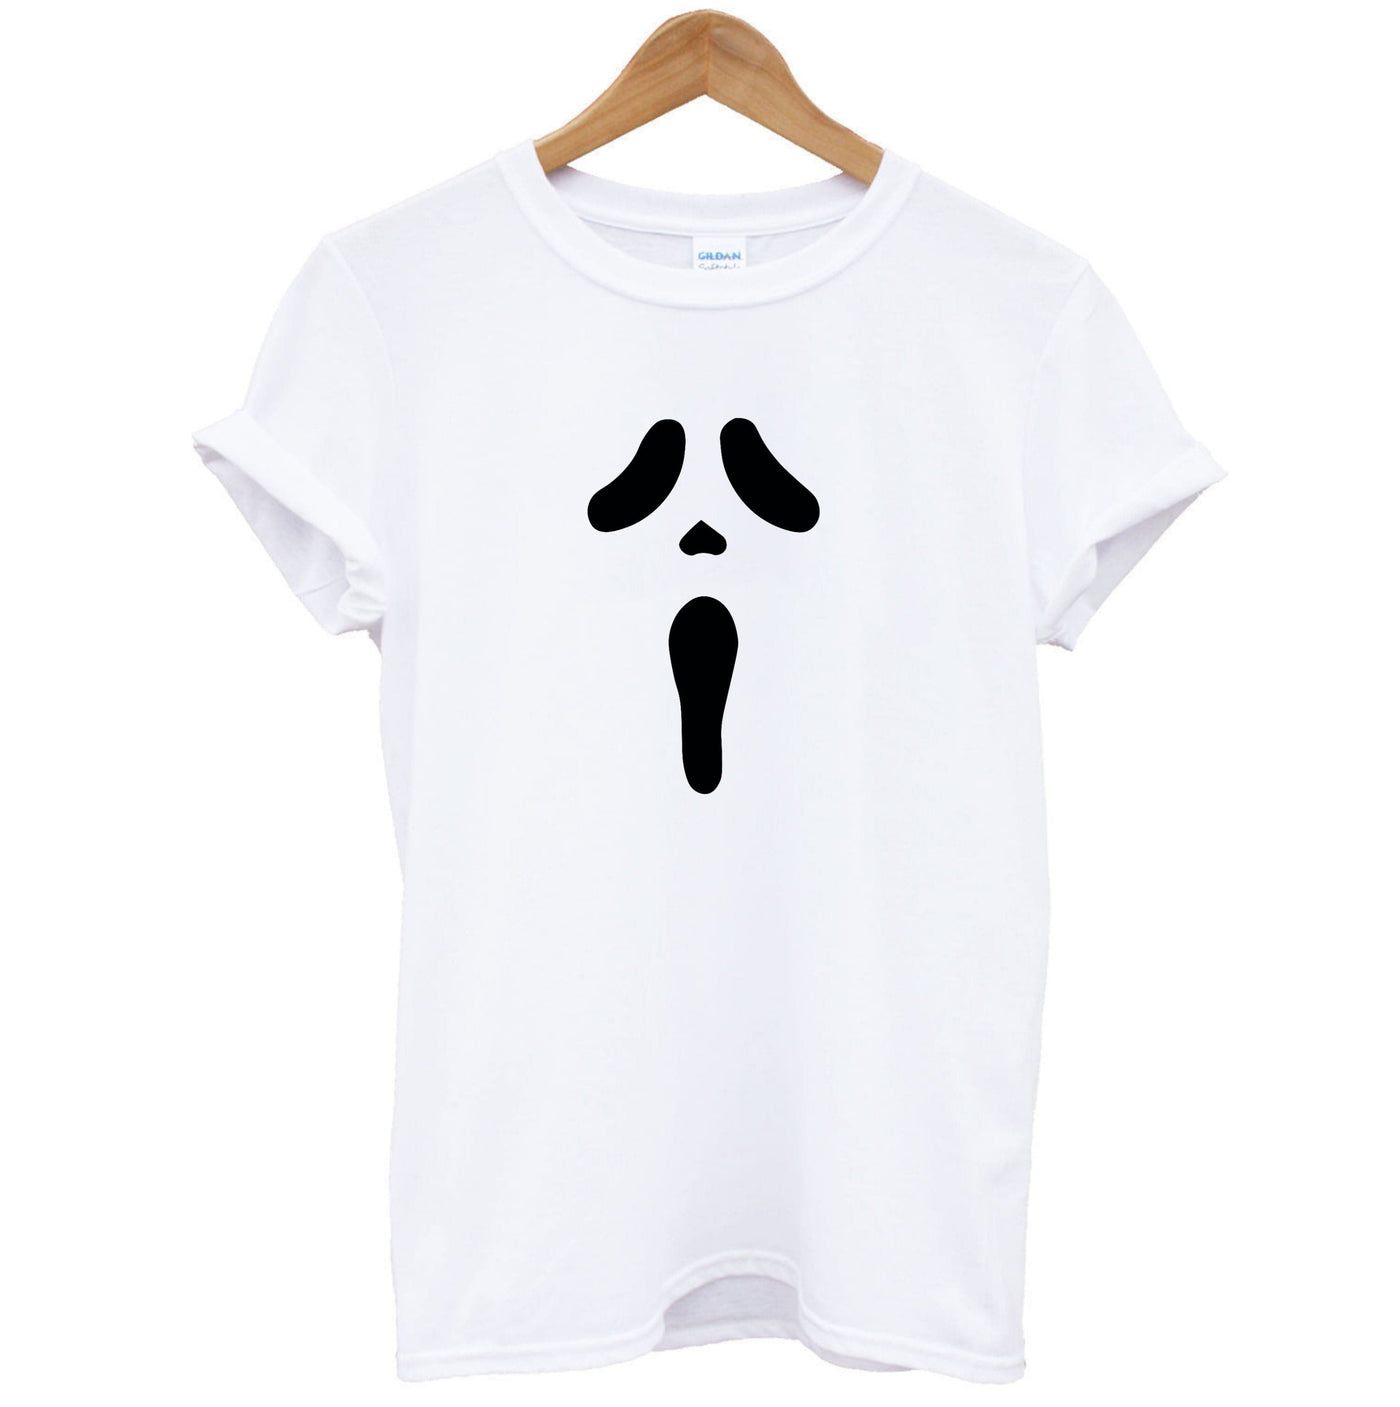 Scream Face T-Shirt